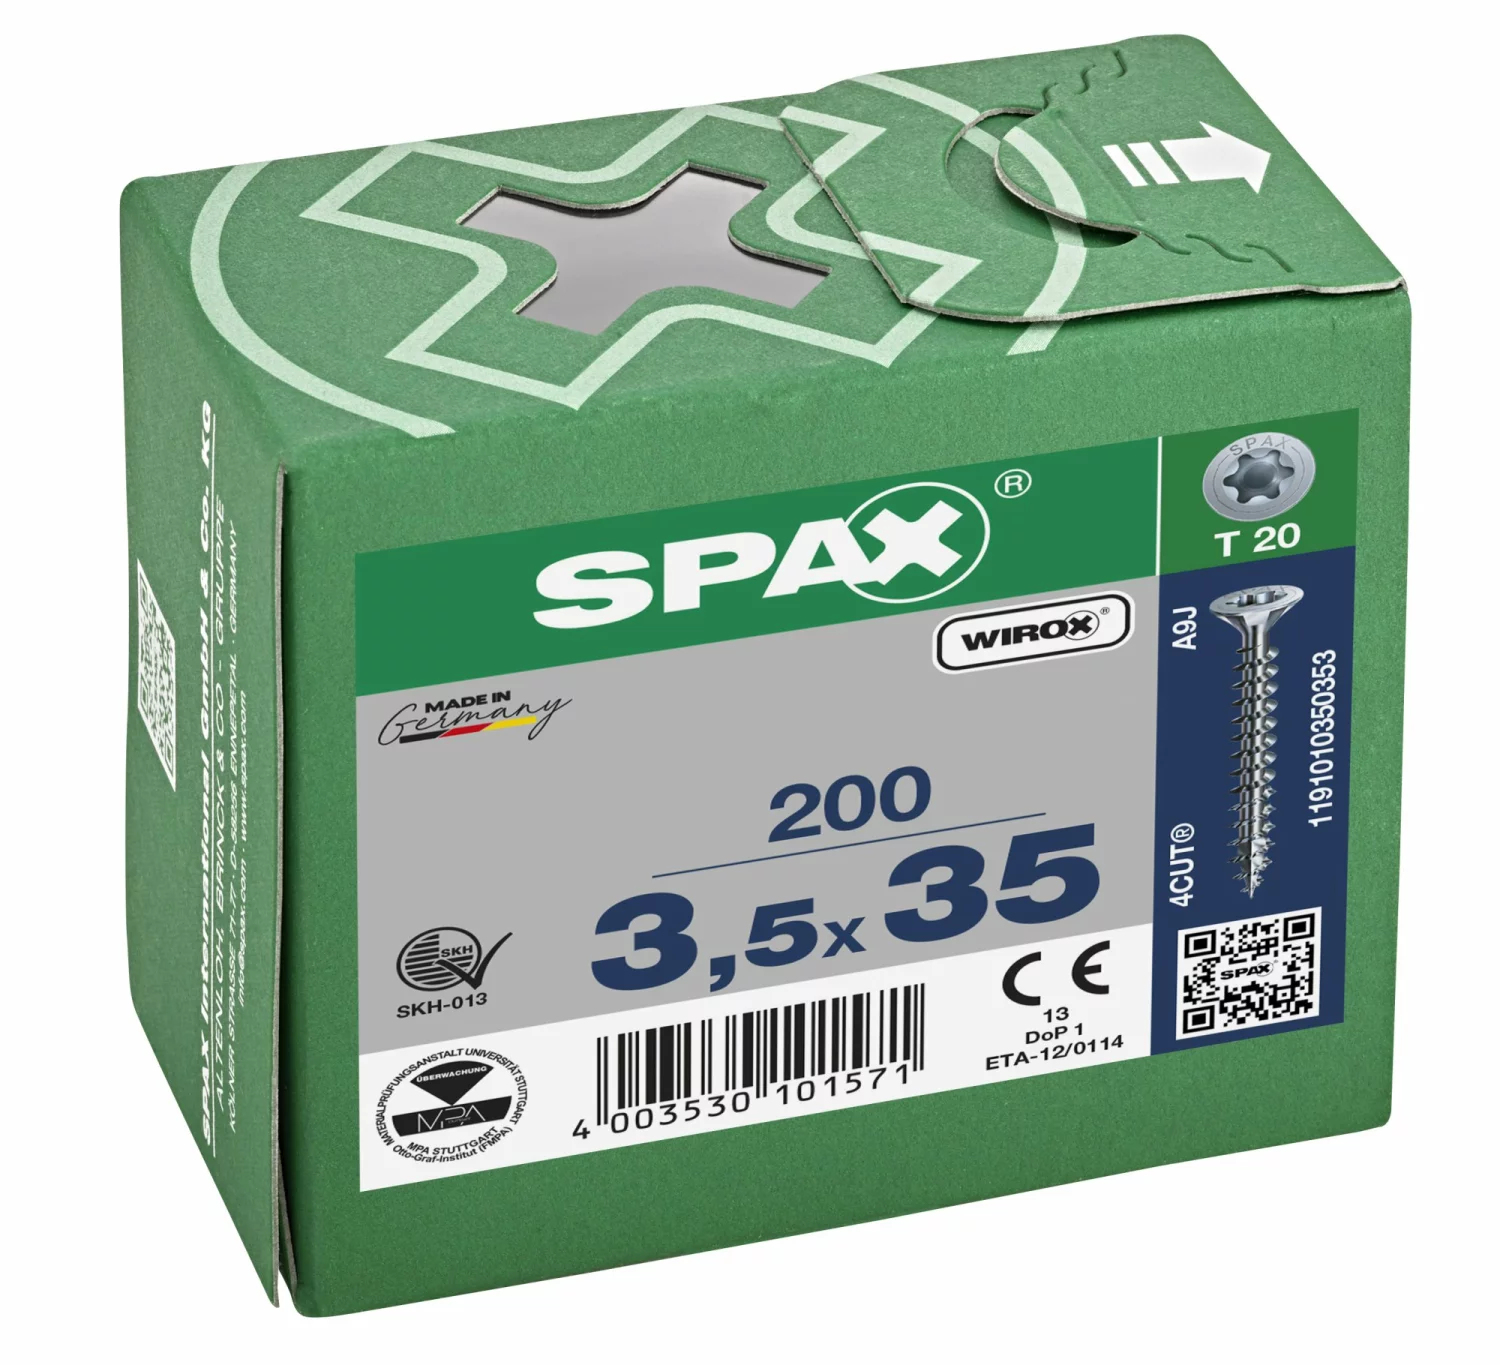 SPAX 1191010350353 Universele schroef, Verzonken kop, 3.5 x 35, Voldraad, T-STAR plus TX20 - WIROX - 200 stuks